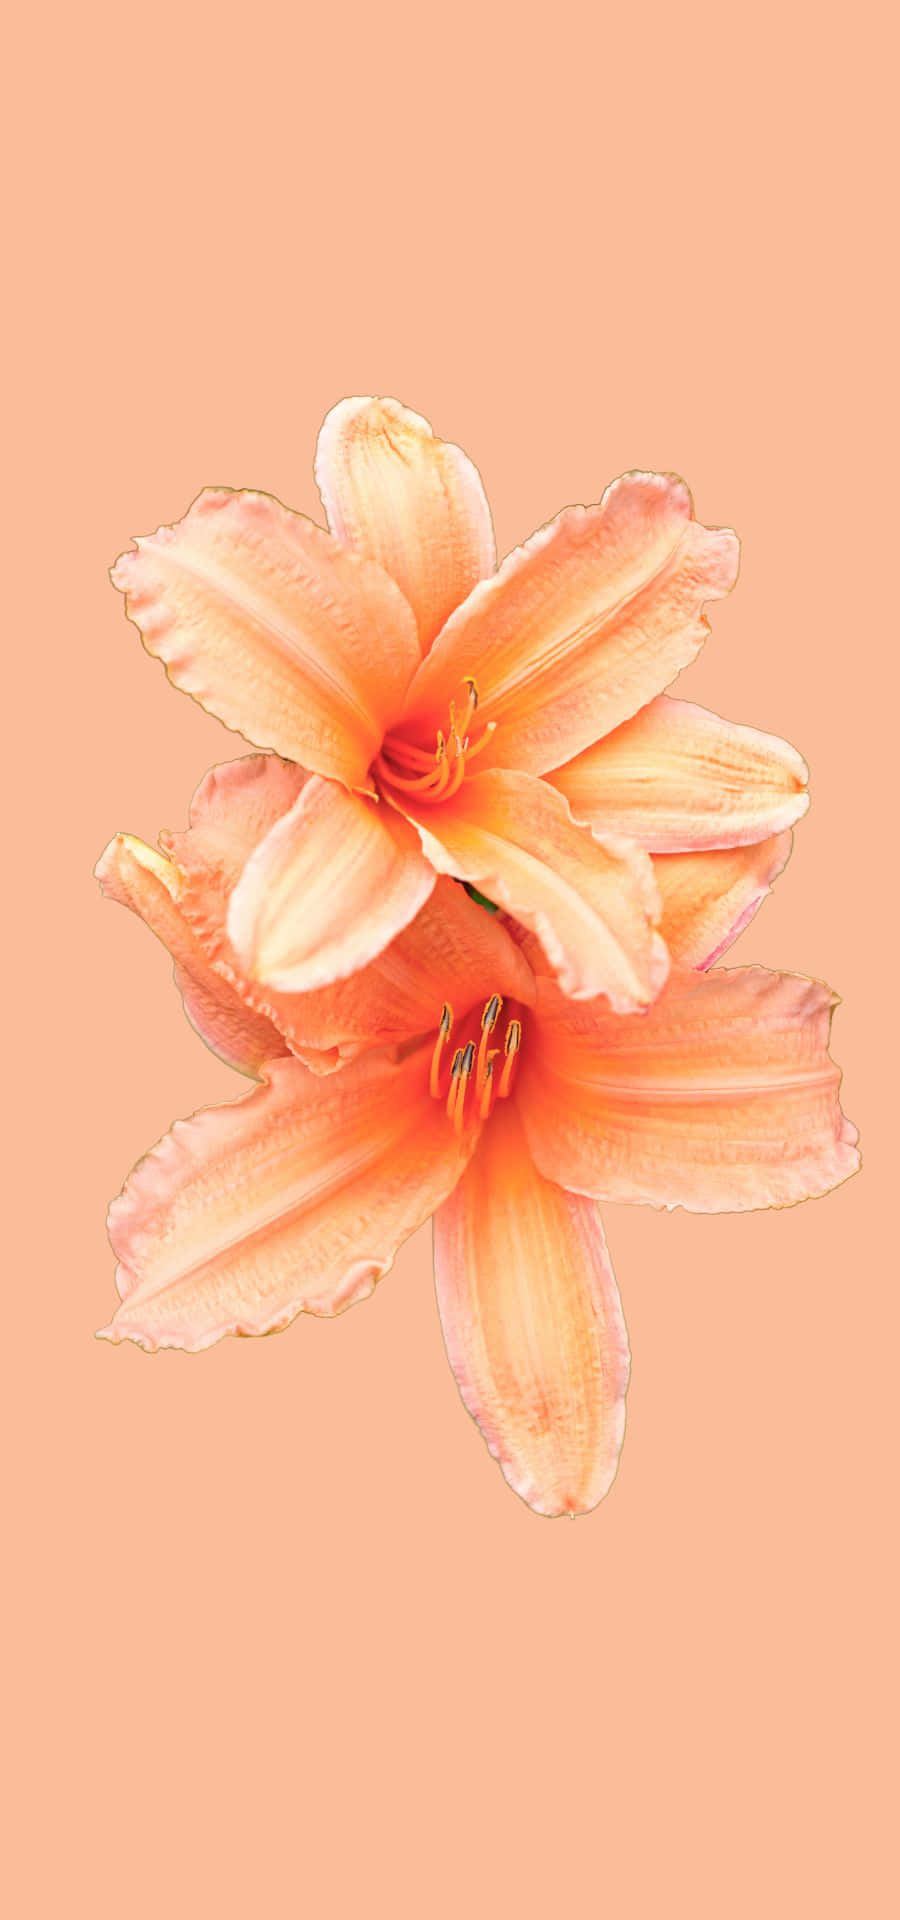 Enbild Av Två Orangea Blommor På En Persikofärgad Bakgrund.